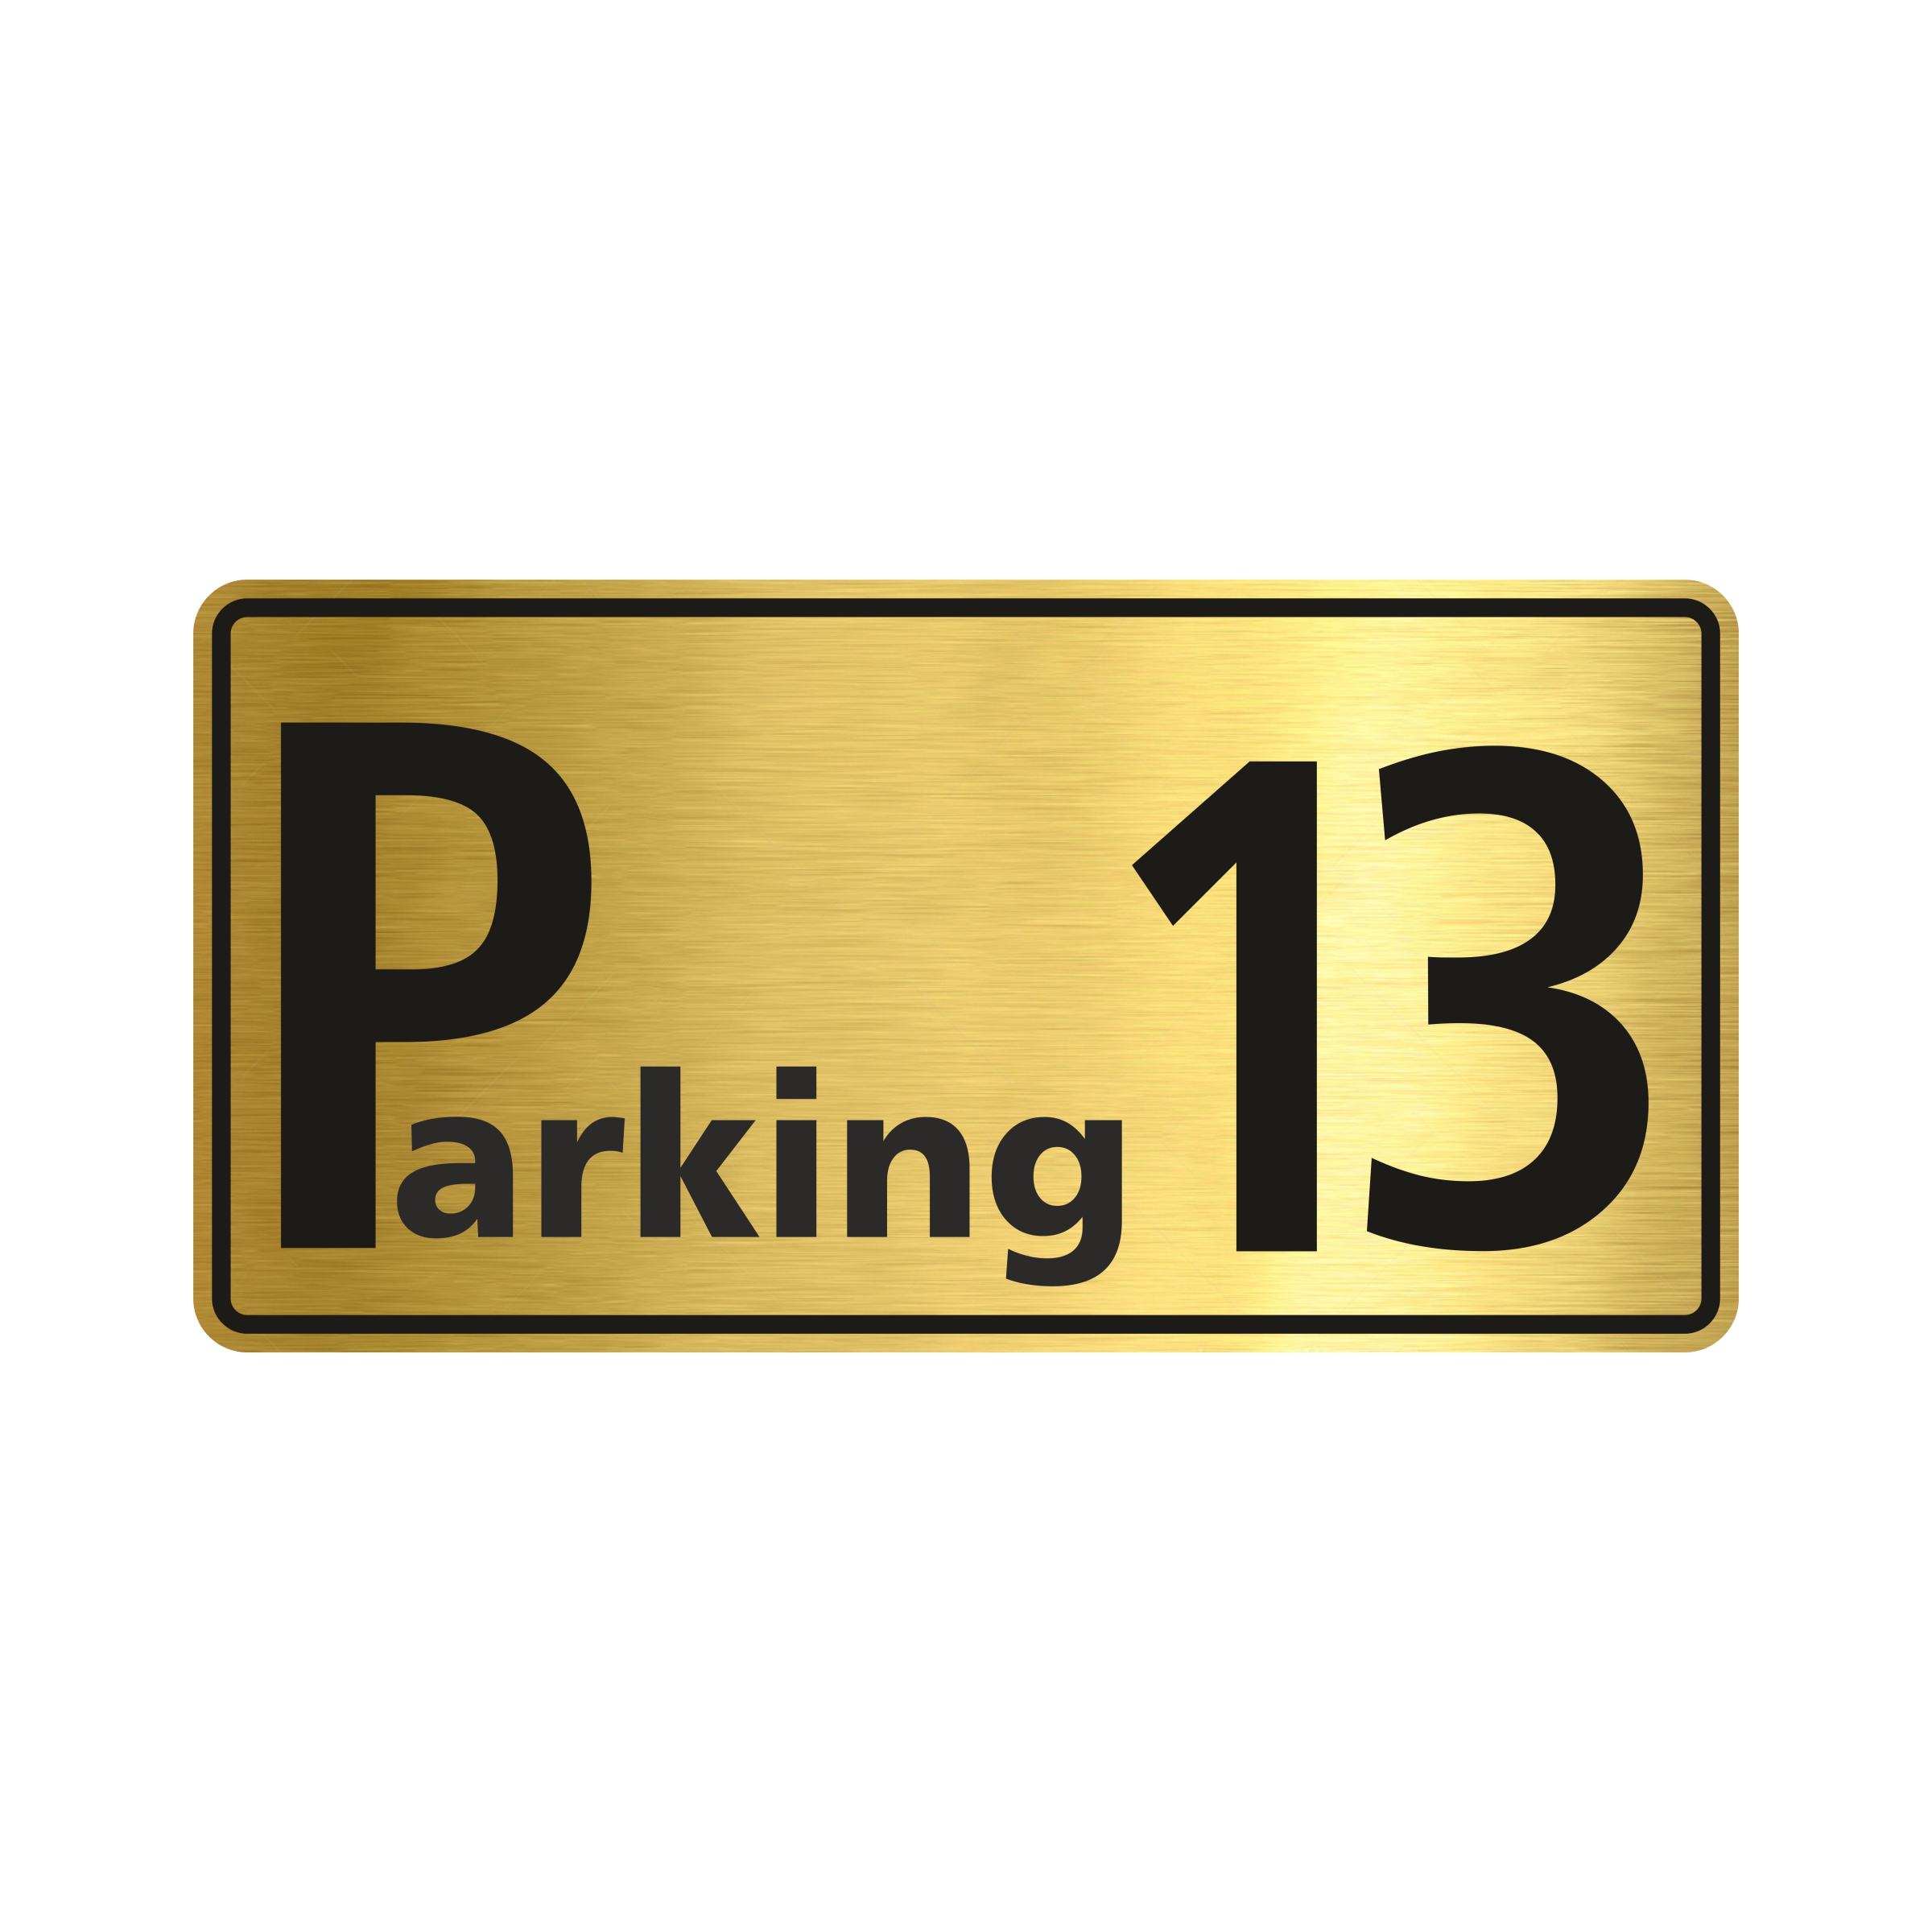 تابلو راهنما طرح پارکینگ شماره سیزده مدل NG613